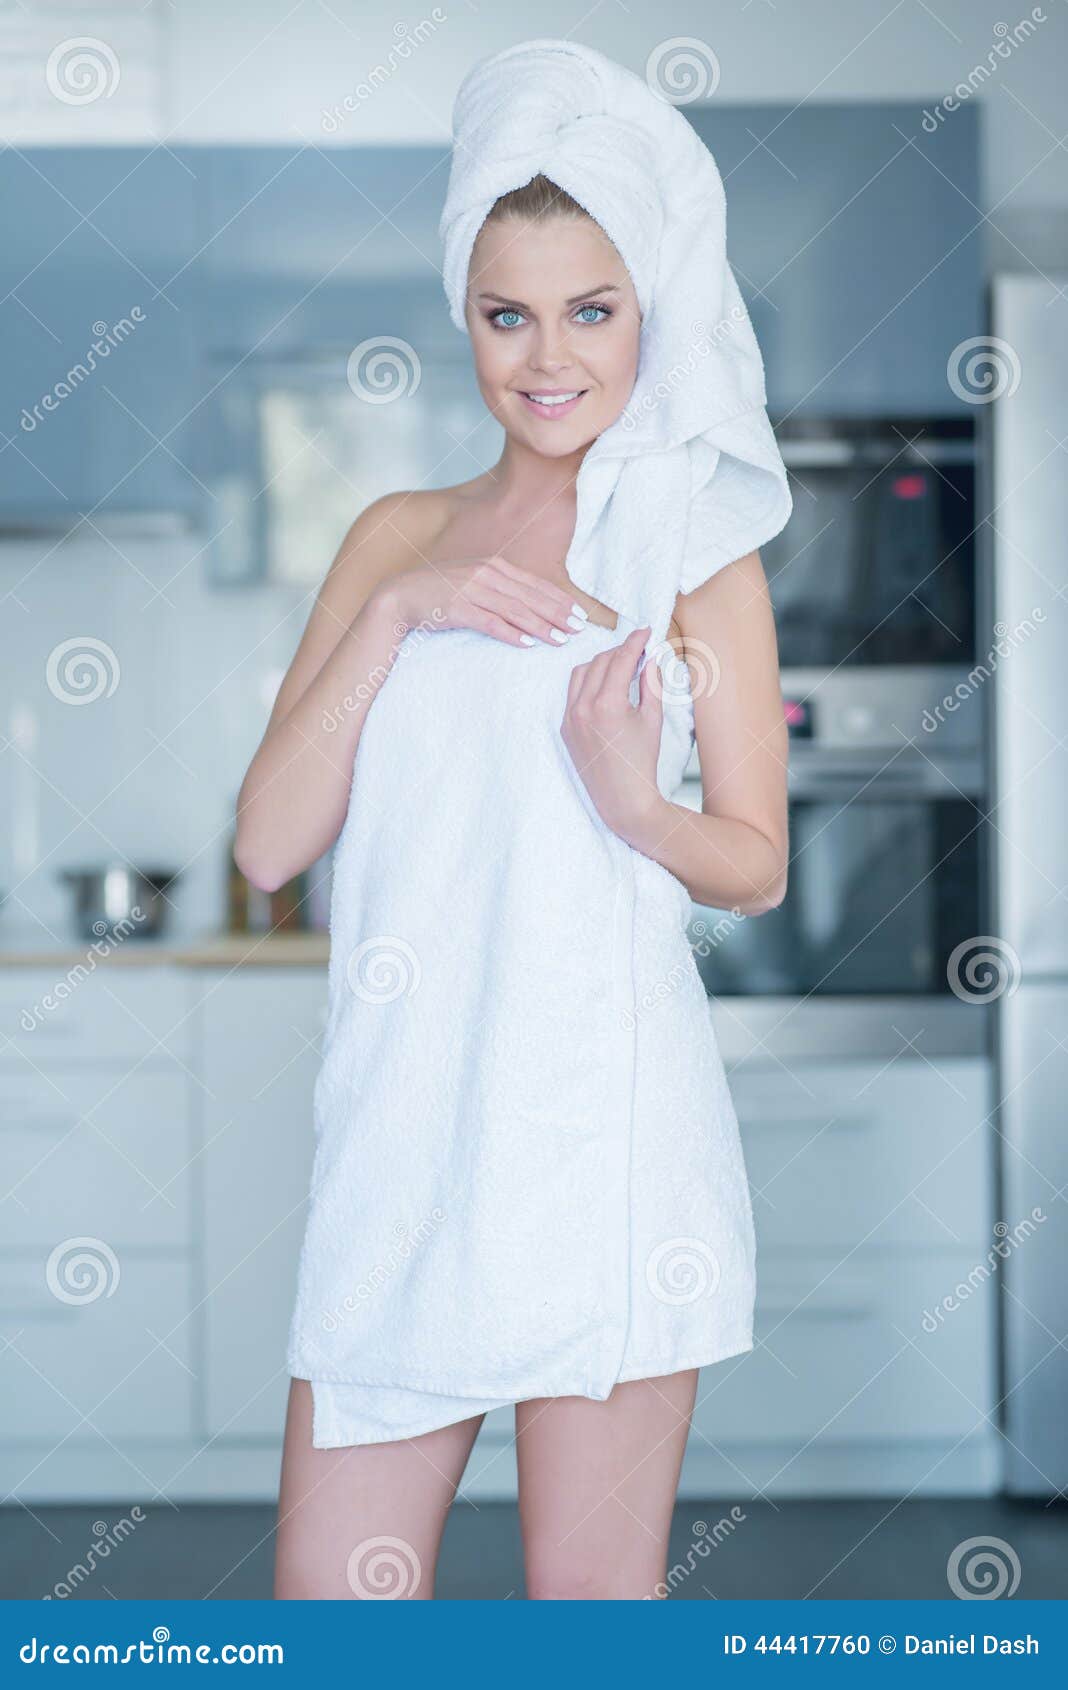 После душа на улицу. Девушка в полотенце. Девушка в полотенце на кухне. Молодые девушки в полотенце. Девушка в белом полотенце.